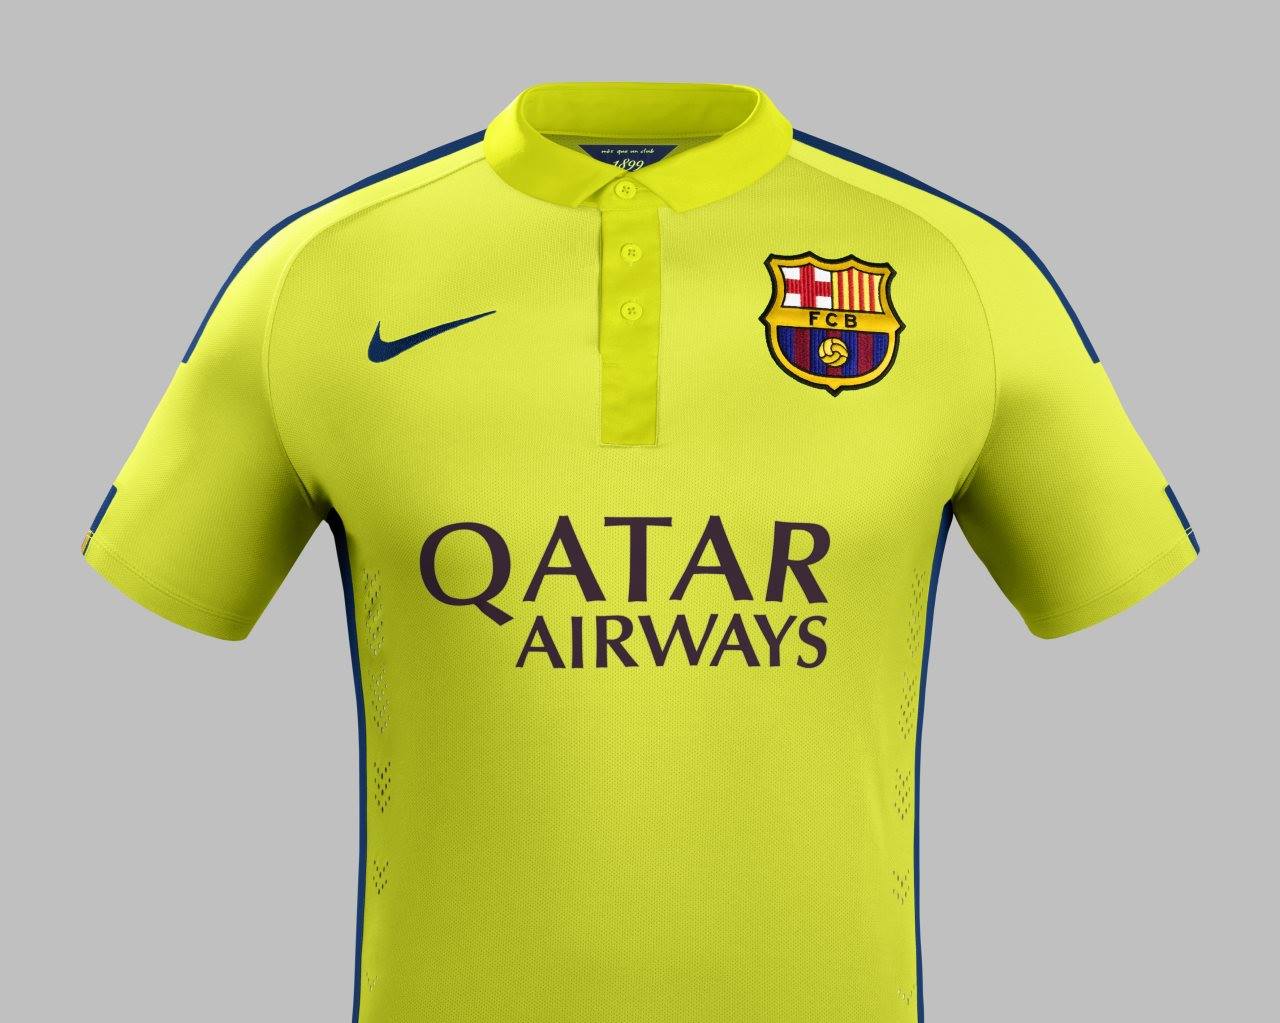 bekken viel Doorlaatbaarheid FC Barcelona 14-15 (2014-15) Home, Away and Third Kits - Footy Headlines